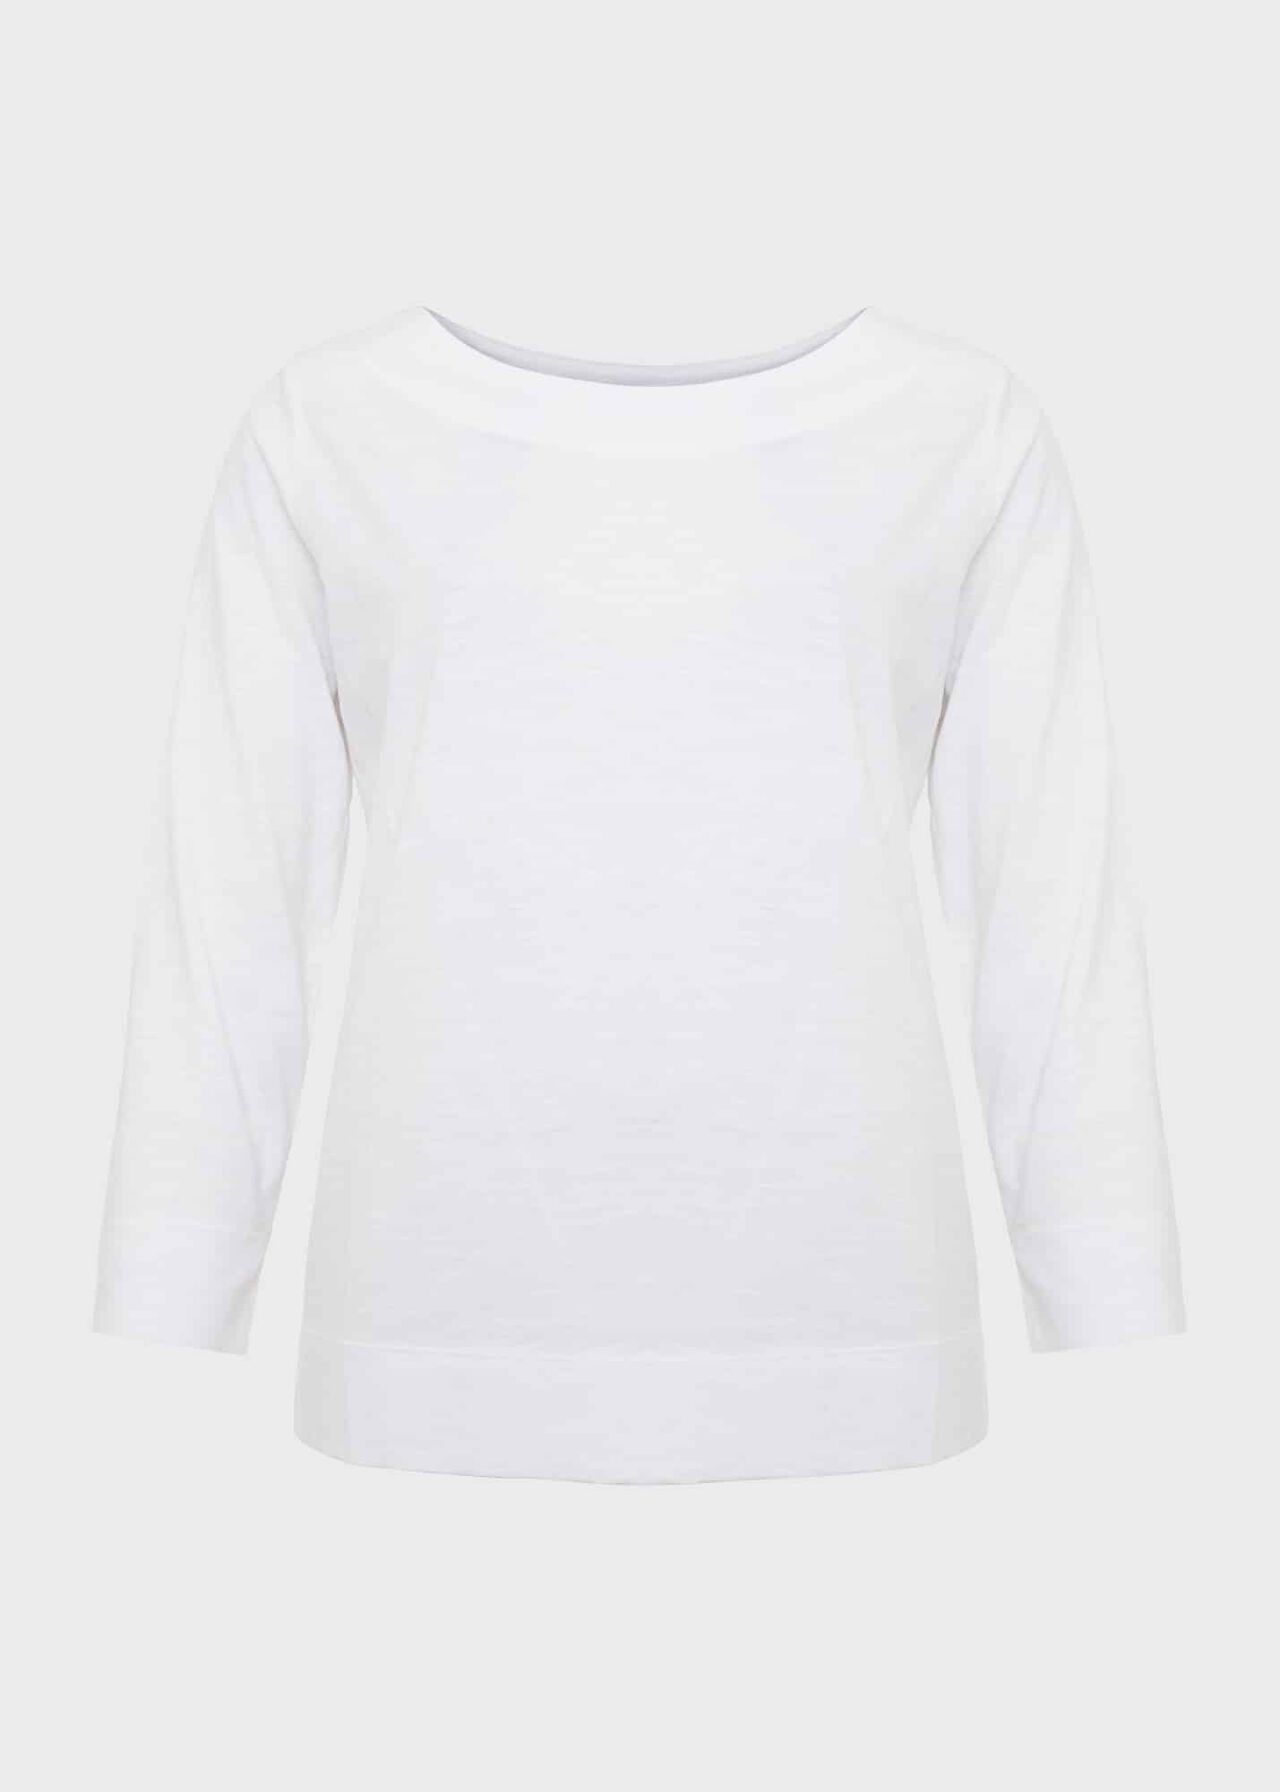 Avia Cotton Slub T-Shirt, White, hi-res